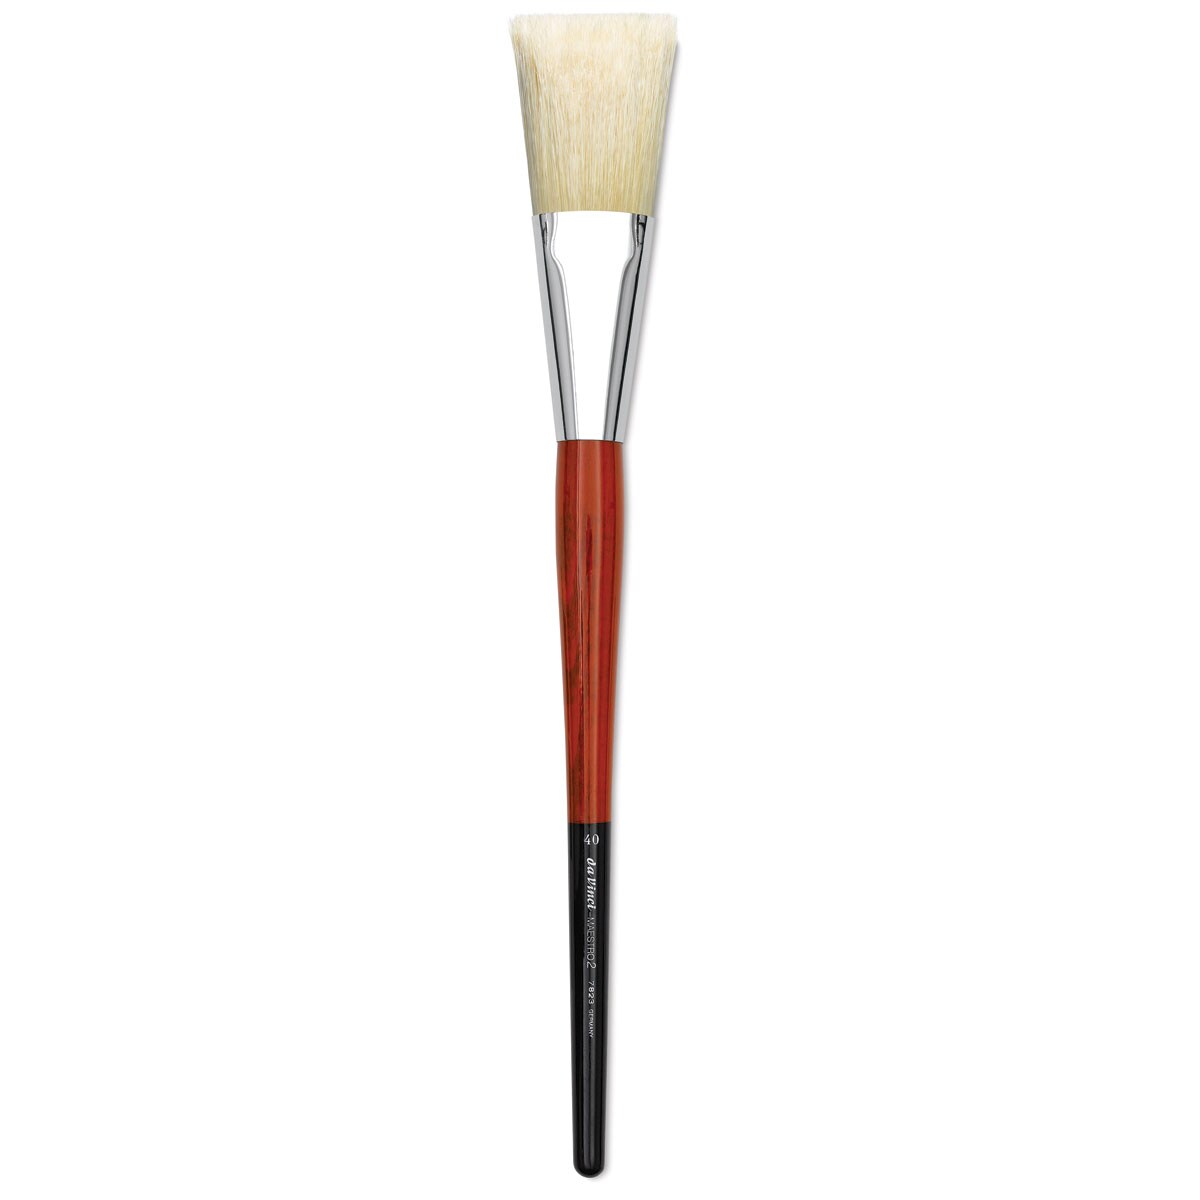 Da Vinci Maestro 2 Hog Bristle Brush - Pro Scenic, Long Handle, Size 40